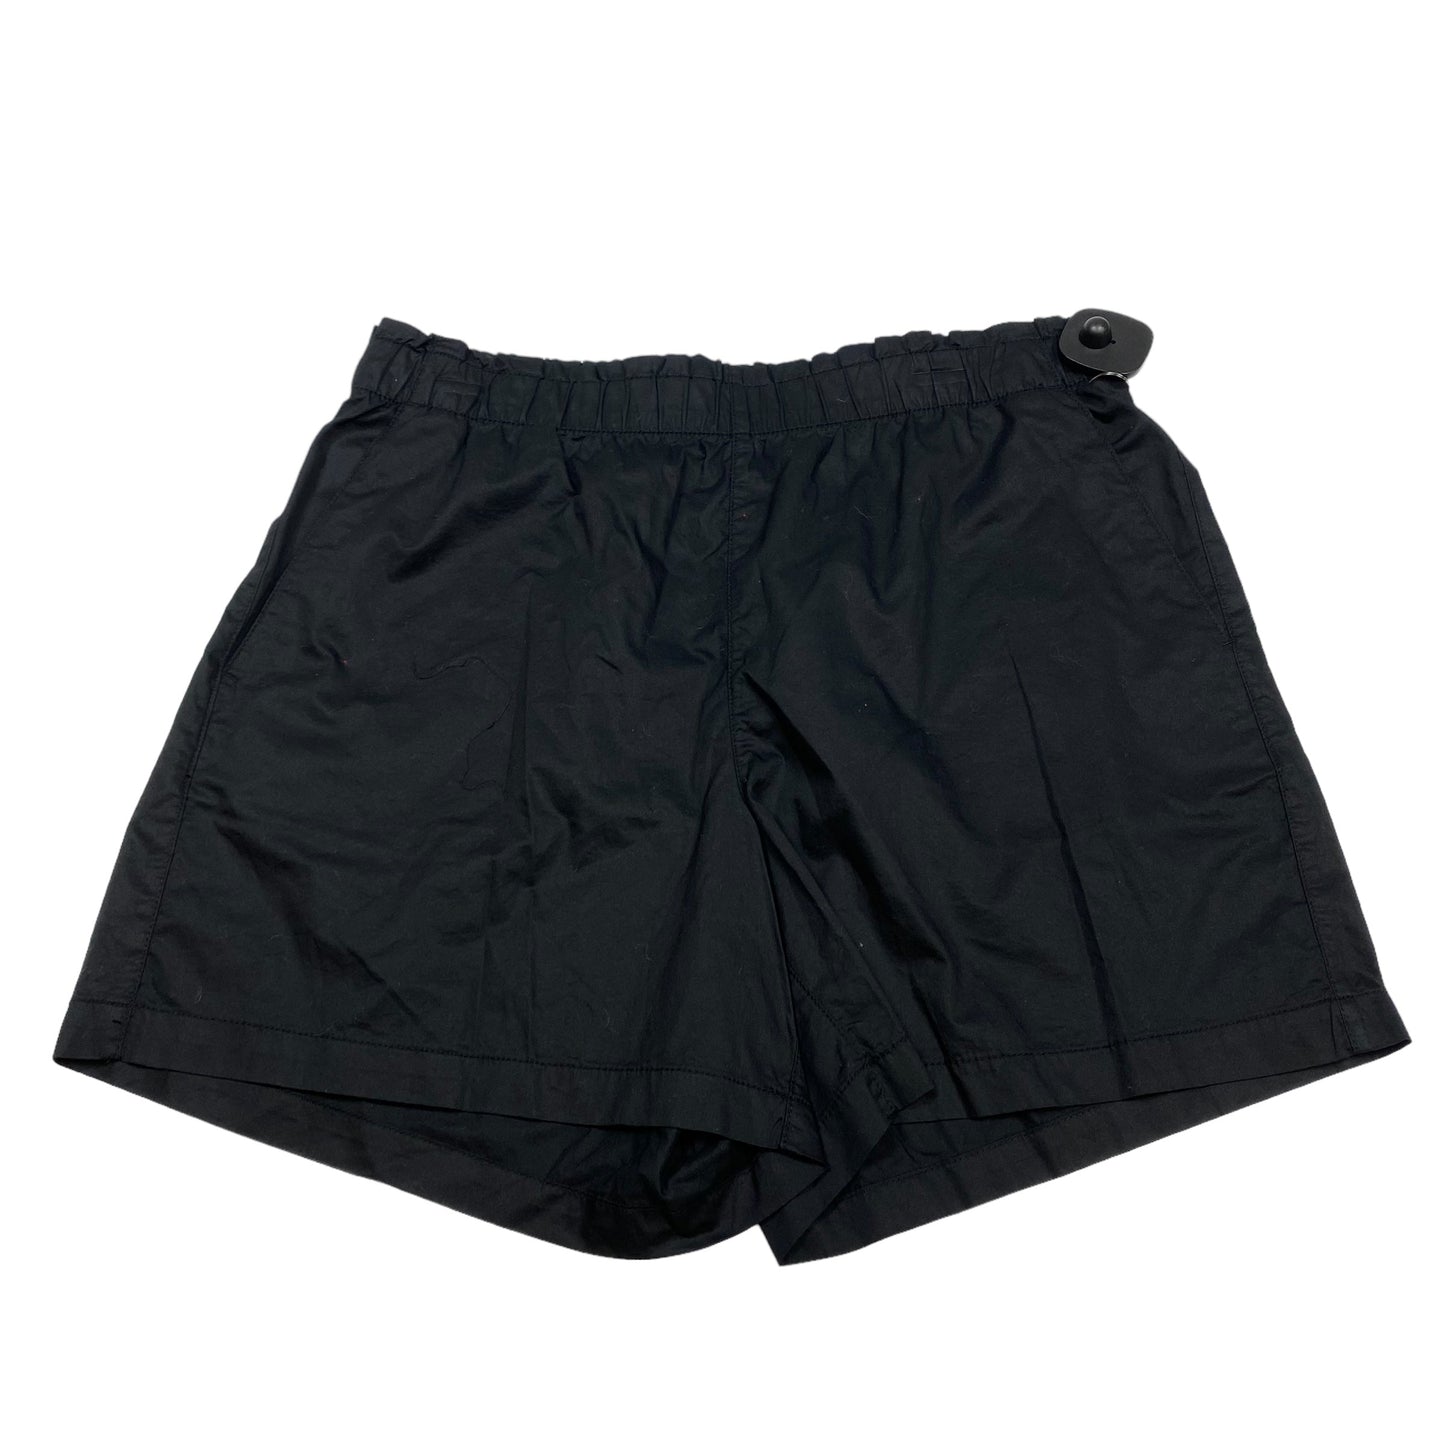 Black Shorts Old Navy, Size L